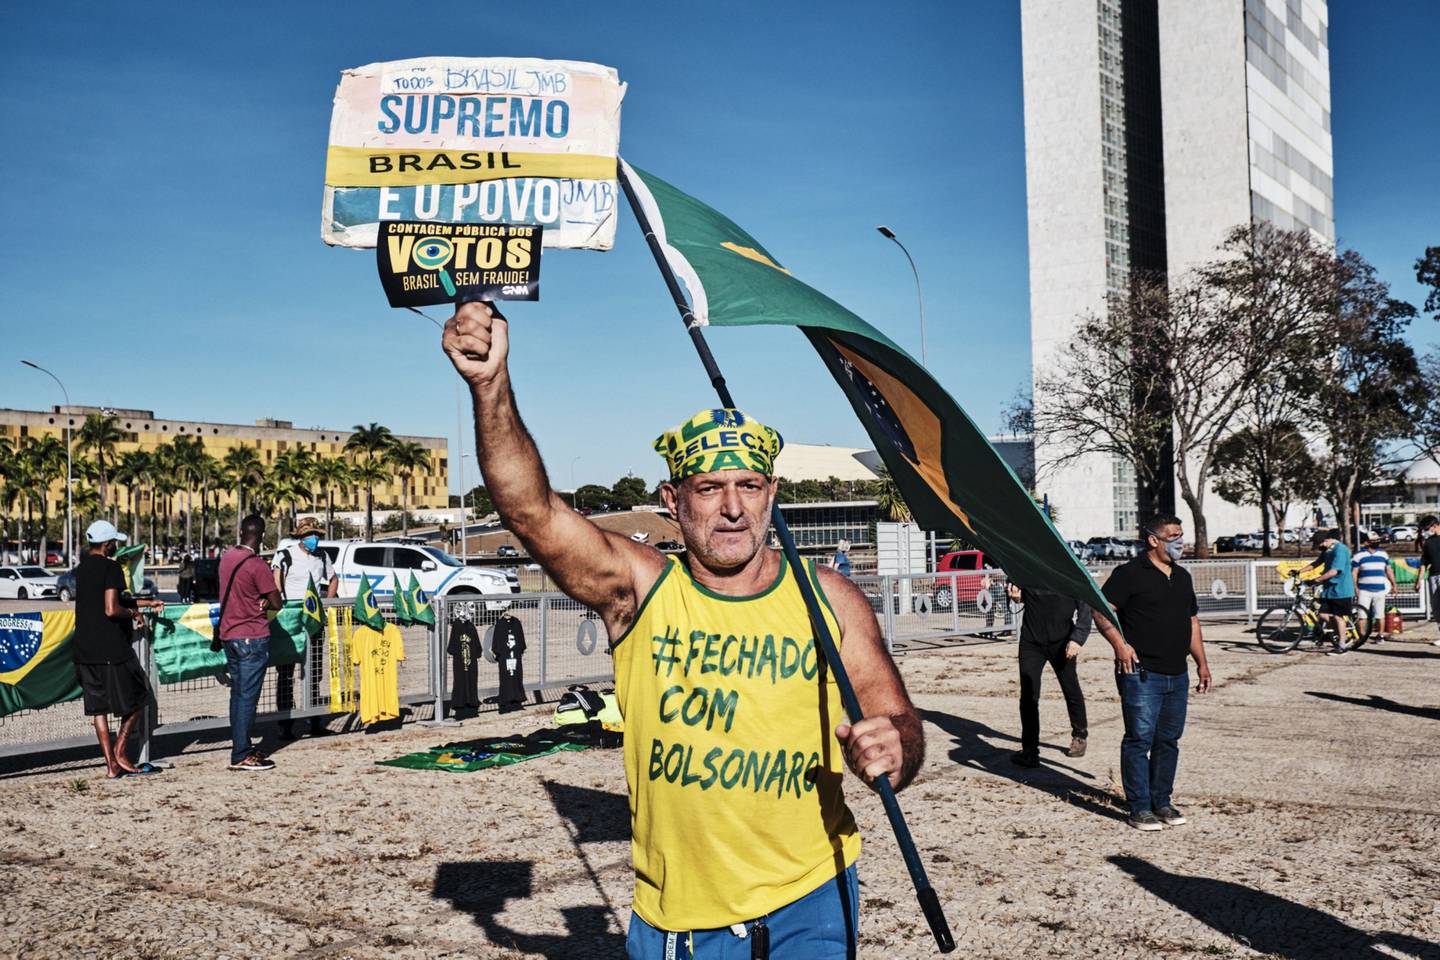 Un partidario de Bolsonaro ondea una bandera de Brasil durante un desfile militar.dfd